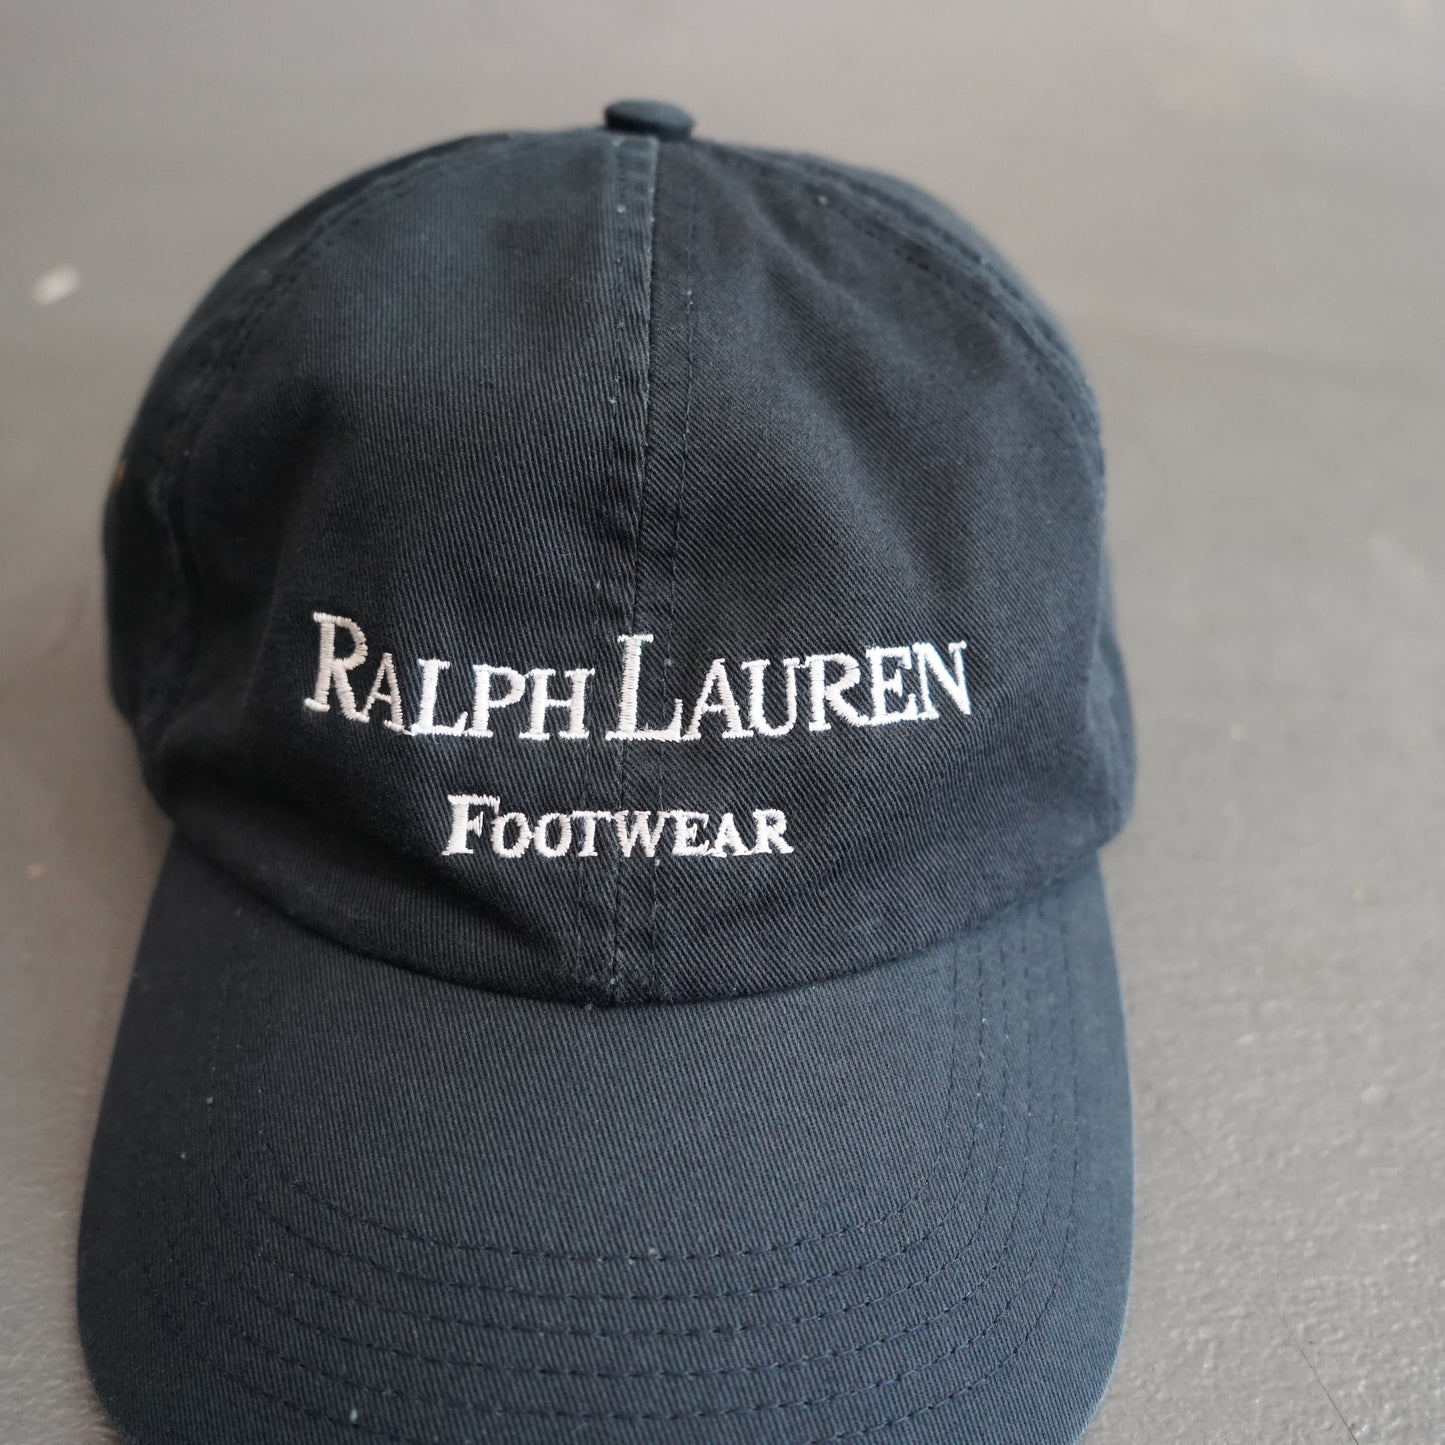 Ralph Lauren Footwear Cap